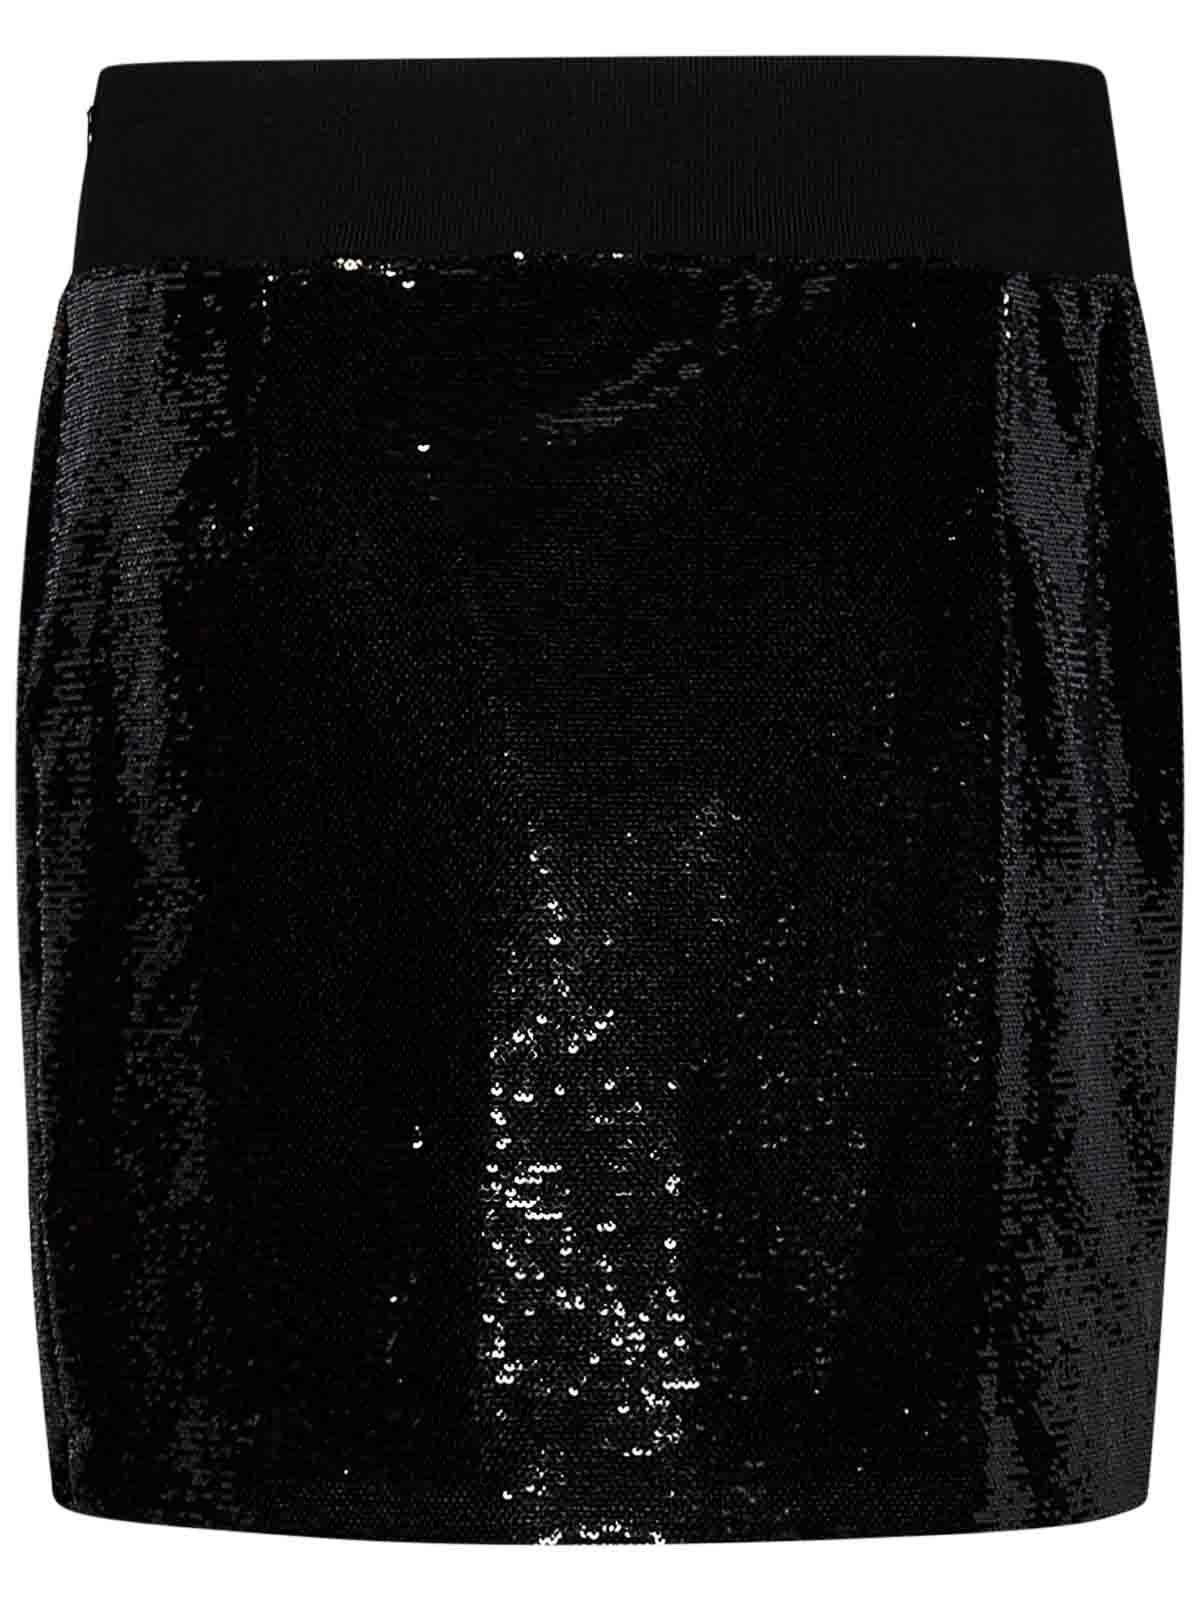 Sequined leggings in black - Tom Ford